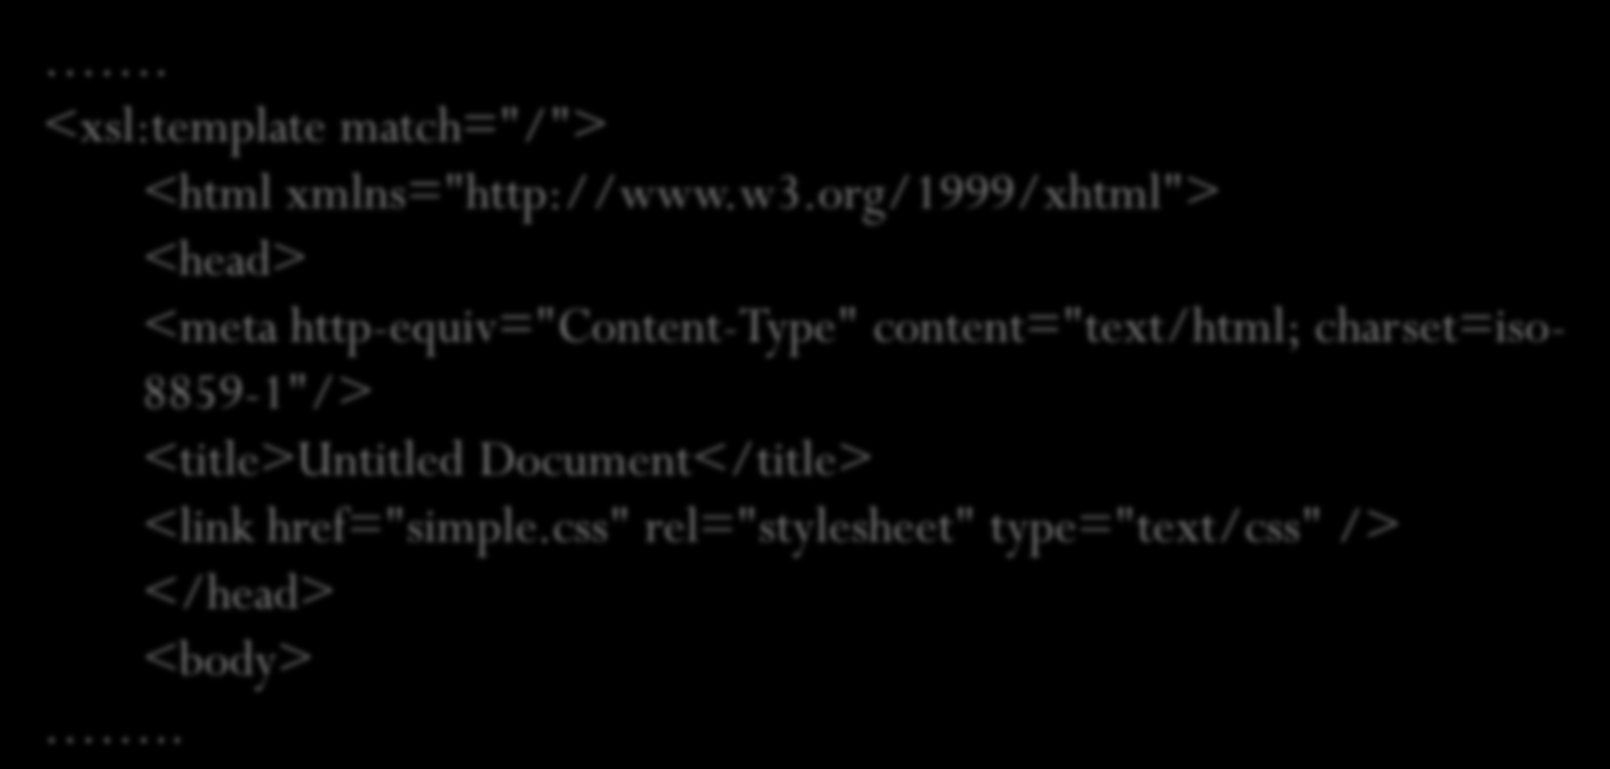 XSLT Y CSS Podemos utiliza una hoja de estilos CSS en nuestra transformación del documento XML, para presentar su contenido. En nuestro documento xsl, cargaremos la hoja de CSS mediante:.